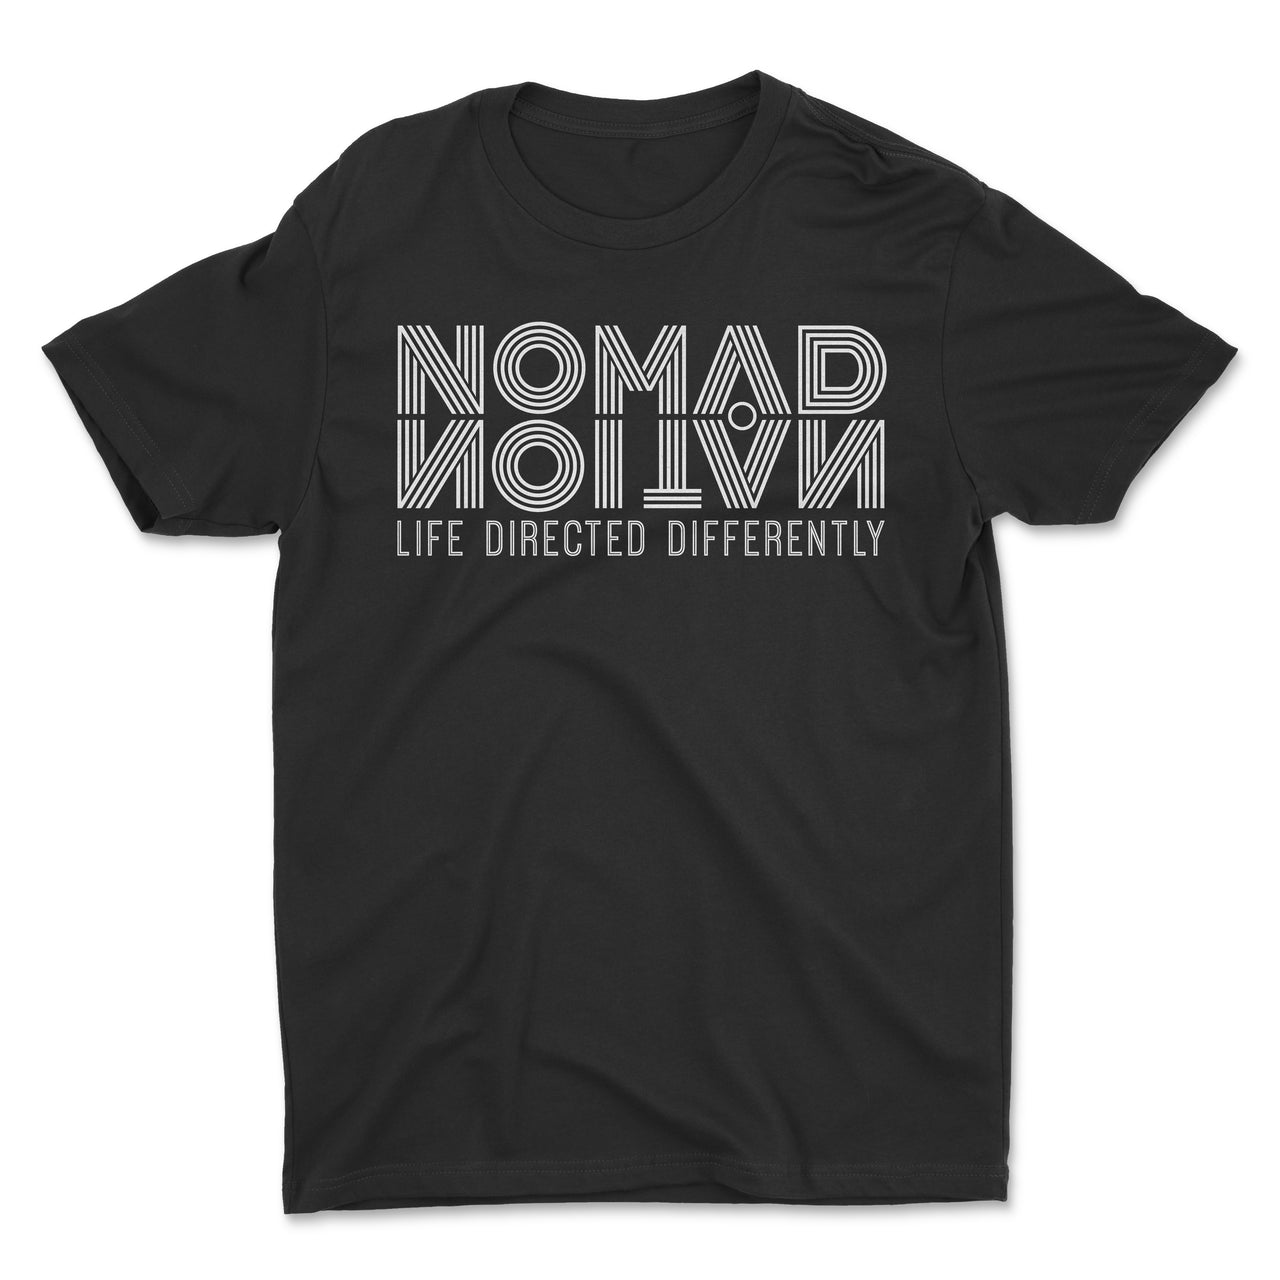 Nomad Nation Flipped Logo Kids Shirt